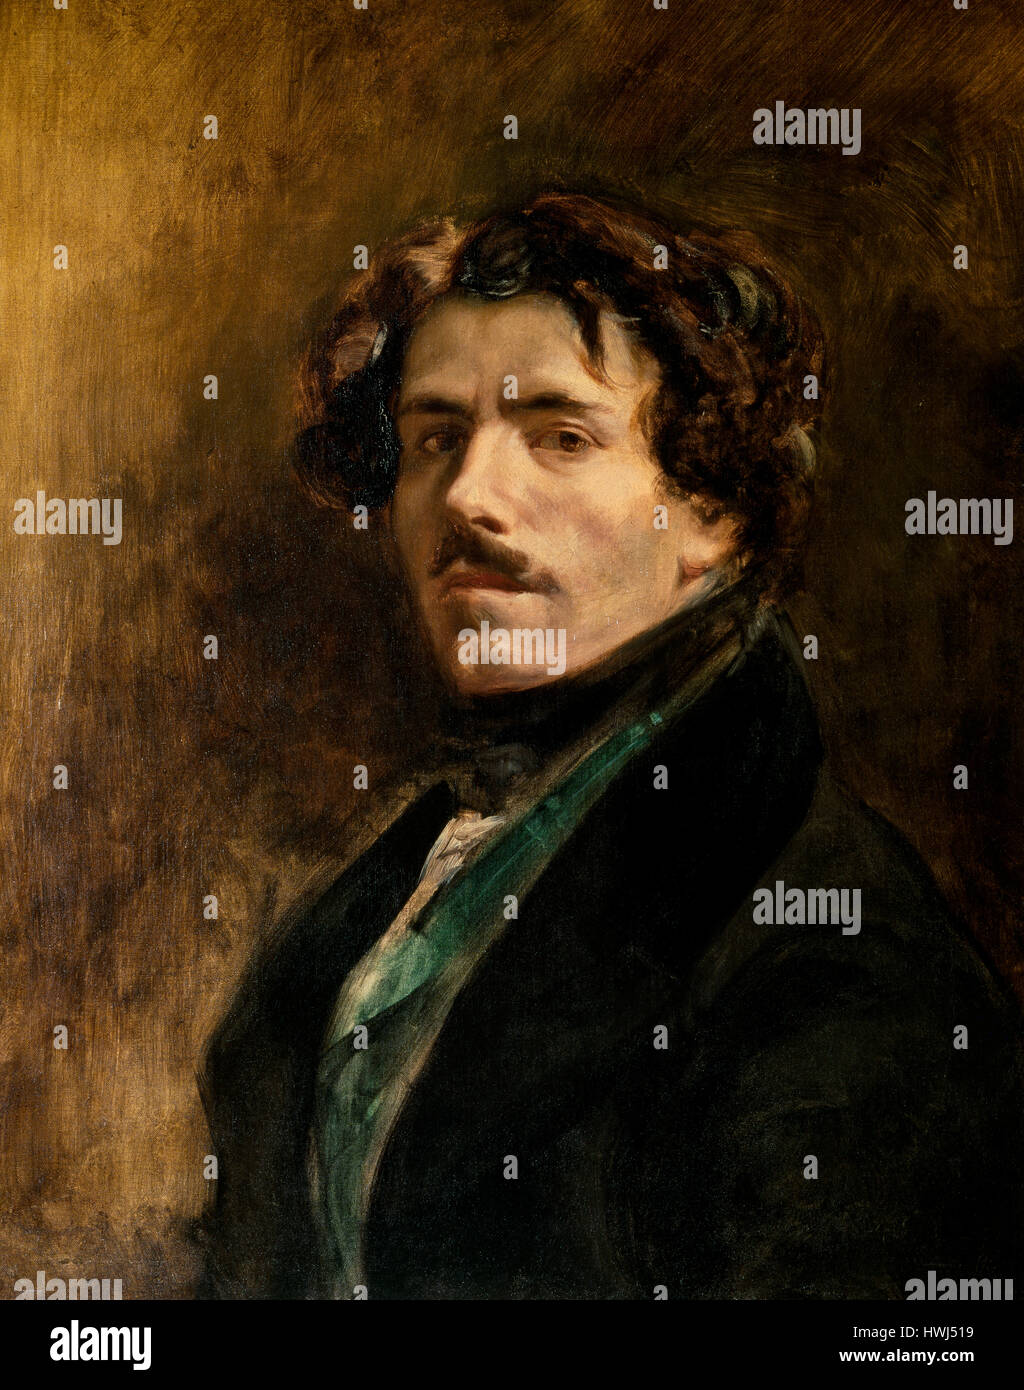 Eugène Delacroix (1798-1863). Französische romantische Künstler. Selbstporträt, 1837. Louvre-Museum. Paris. Frankreich. Stockfoto